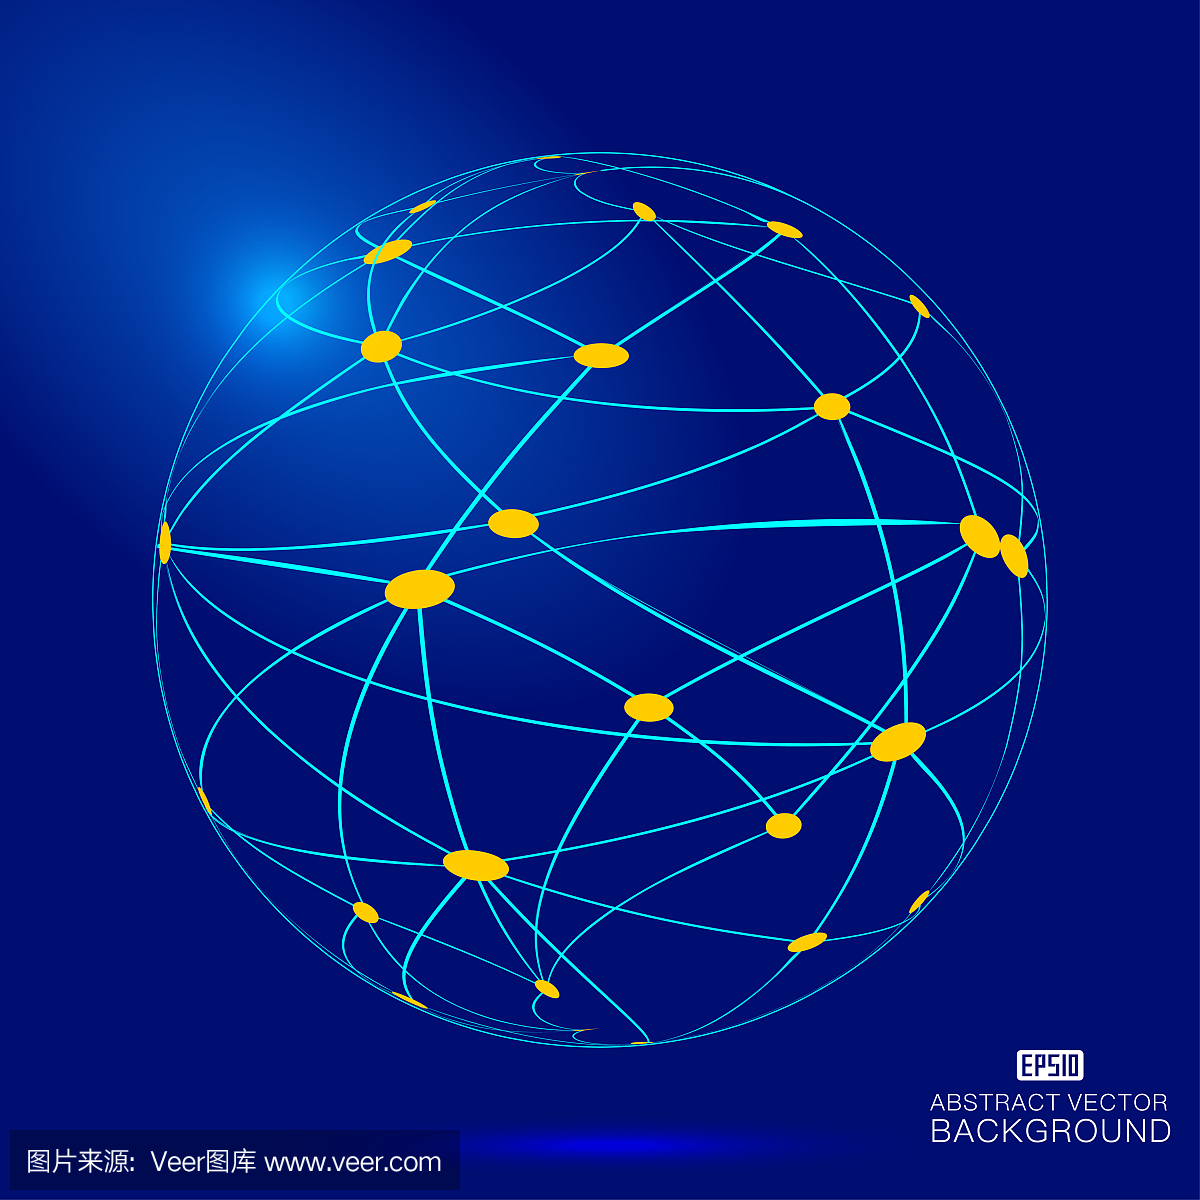 虚线结构图3d球体,科学和技术概念矢量素材